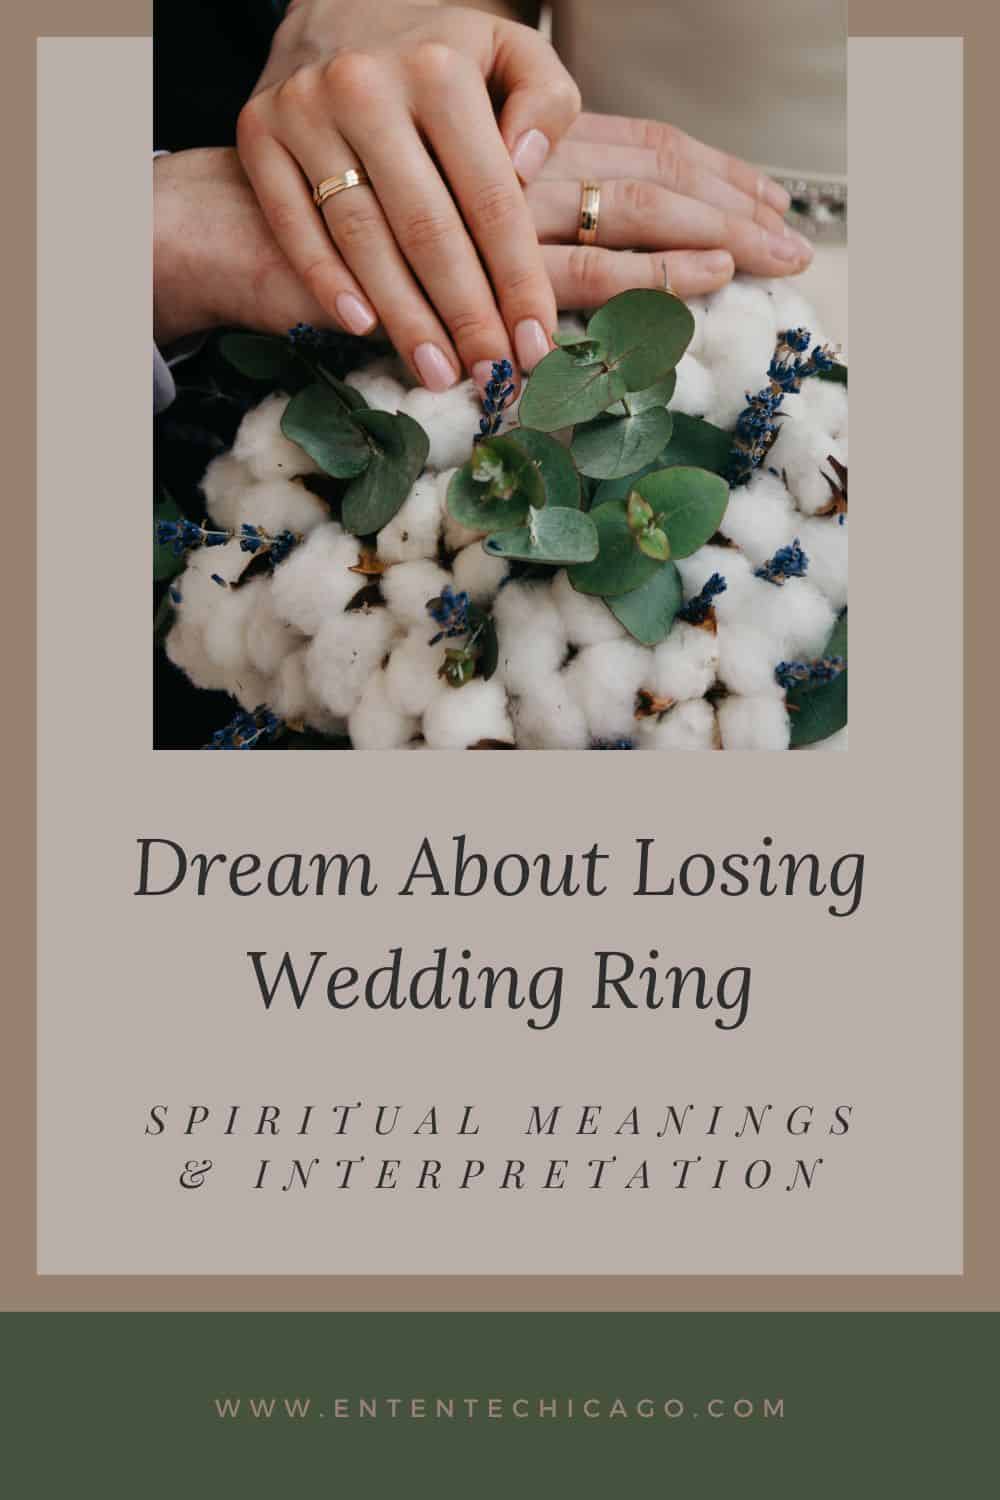  Interpretación de los sueños de perder el anillo de bodas